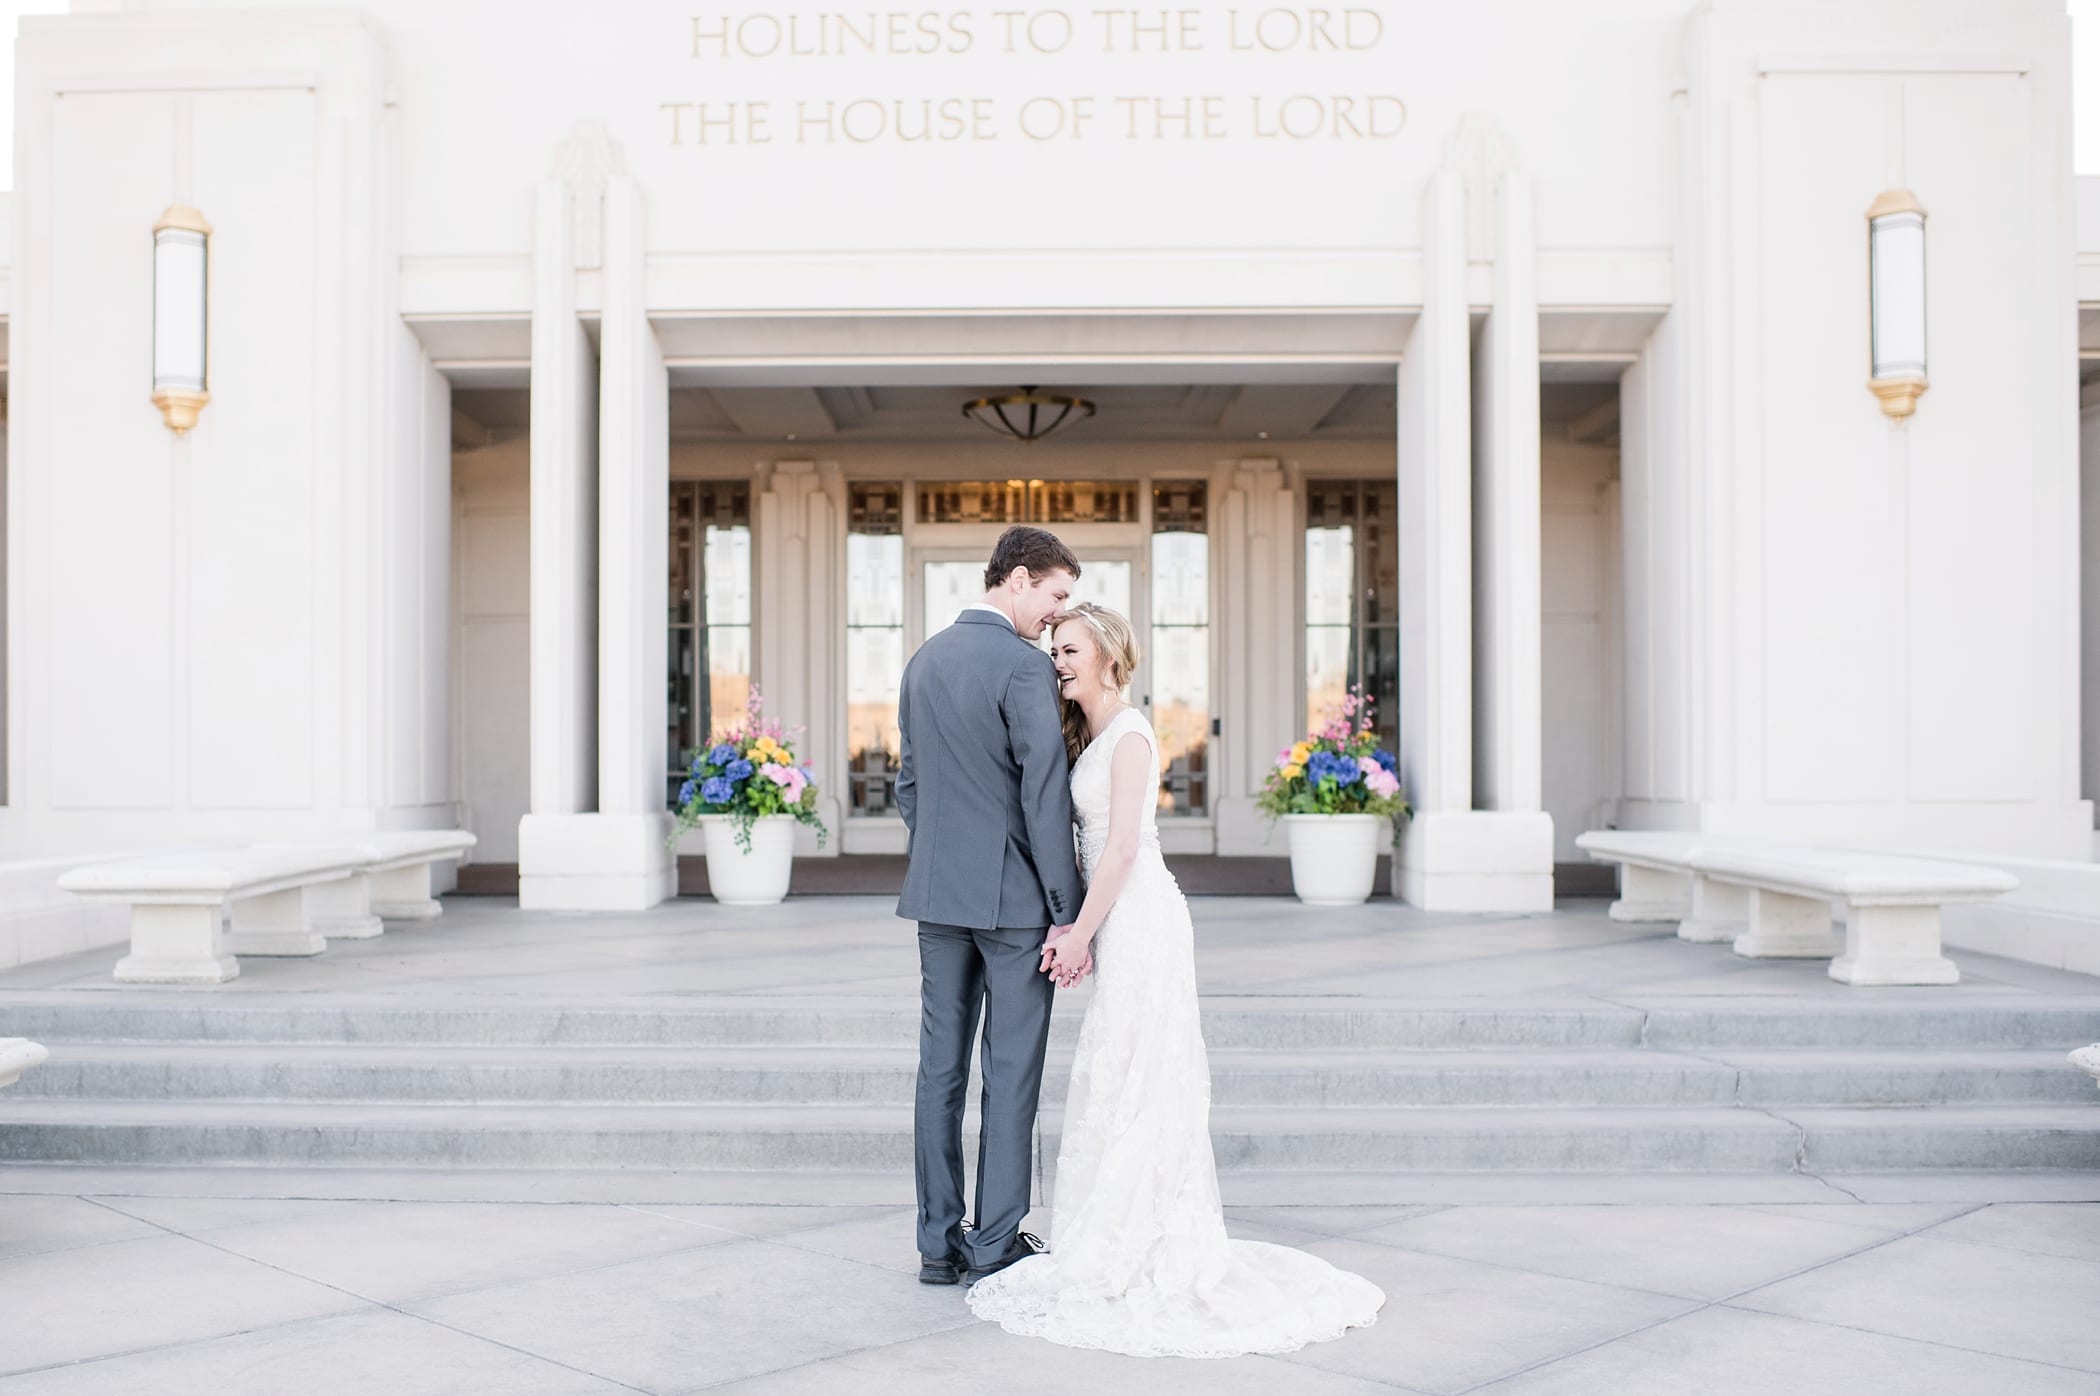 Rexburg LDS temple bridals by Michelle & Logan_0012